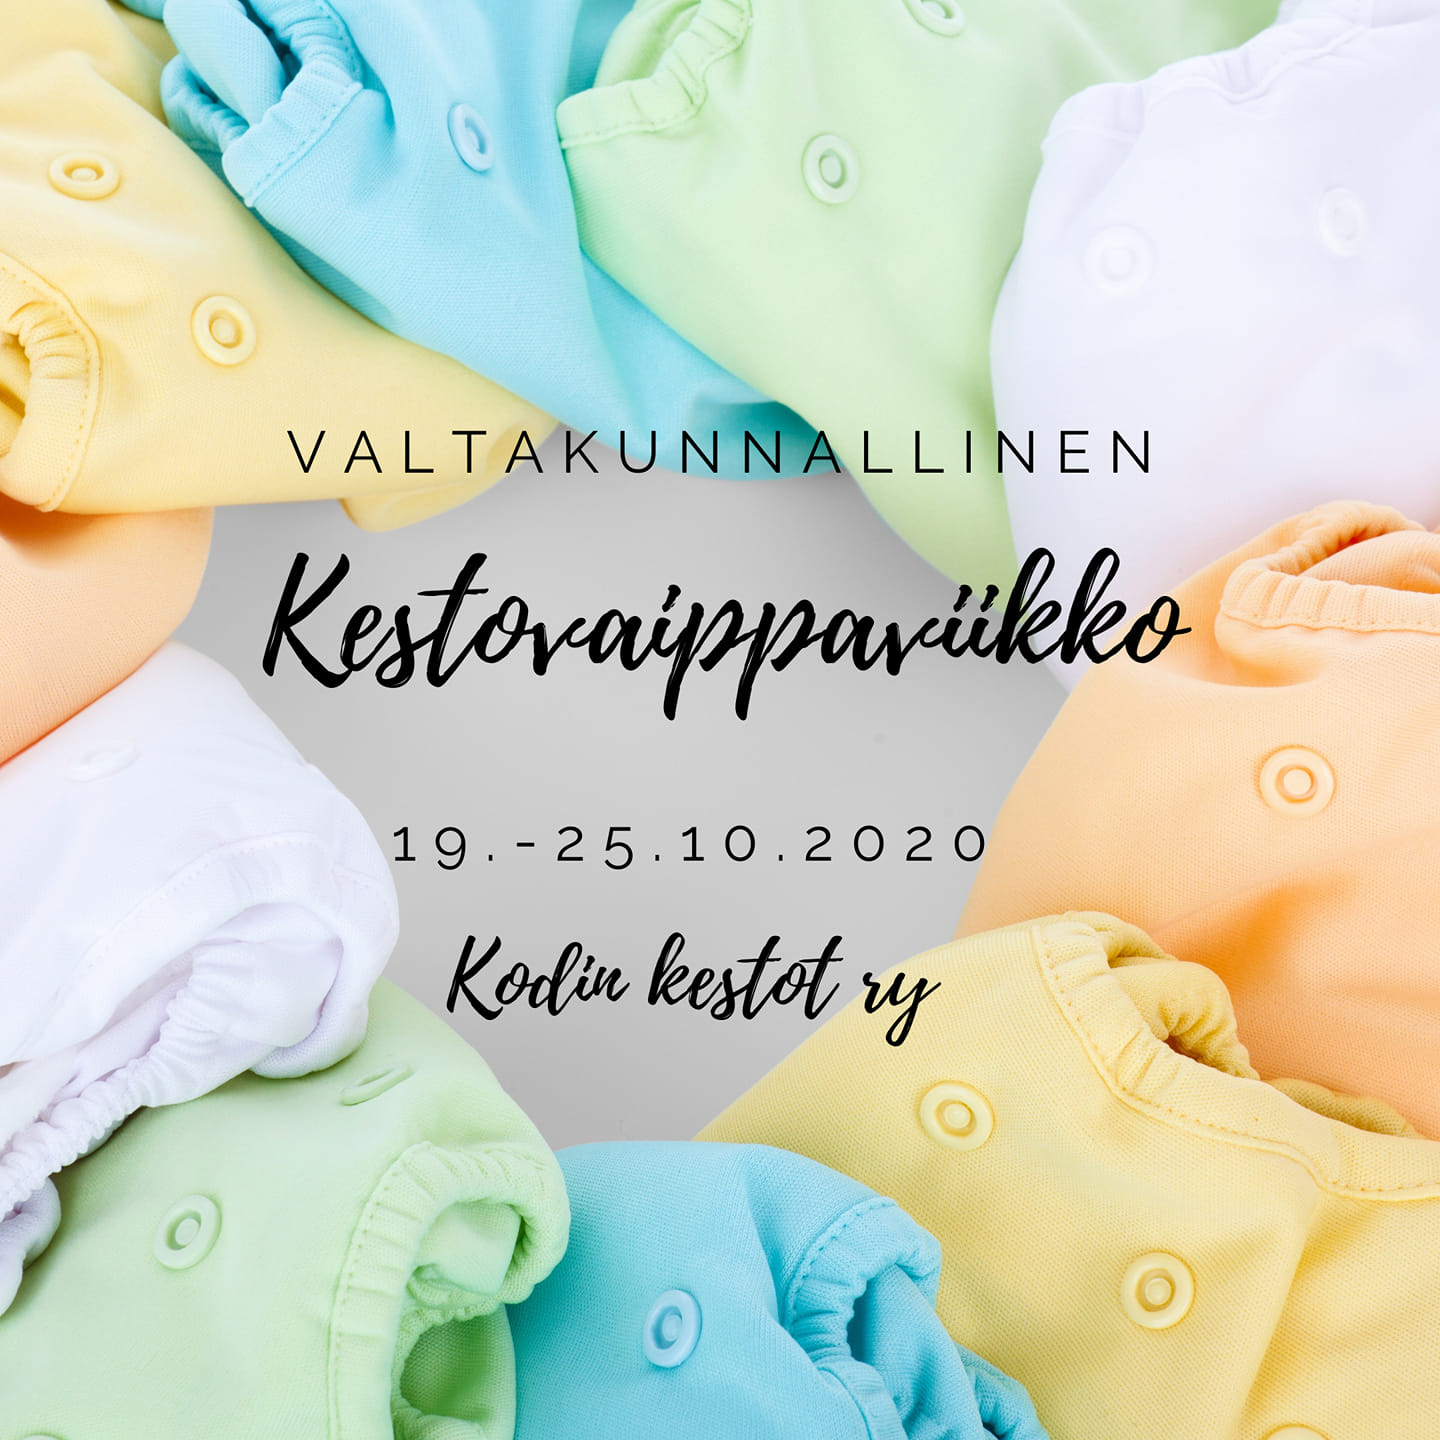 Read more about the article Valtakunnallinen kestovaippaviikko 19.-25.10.2020